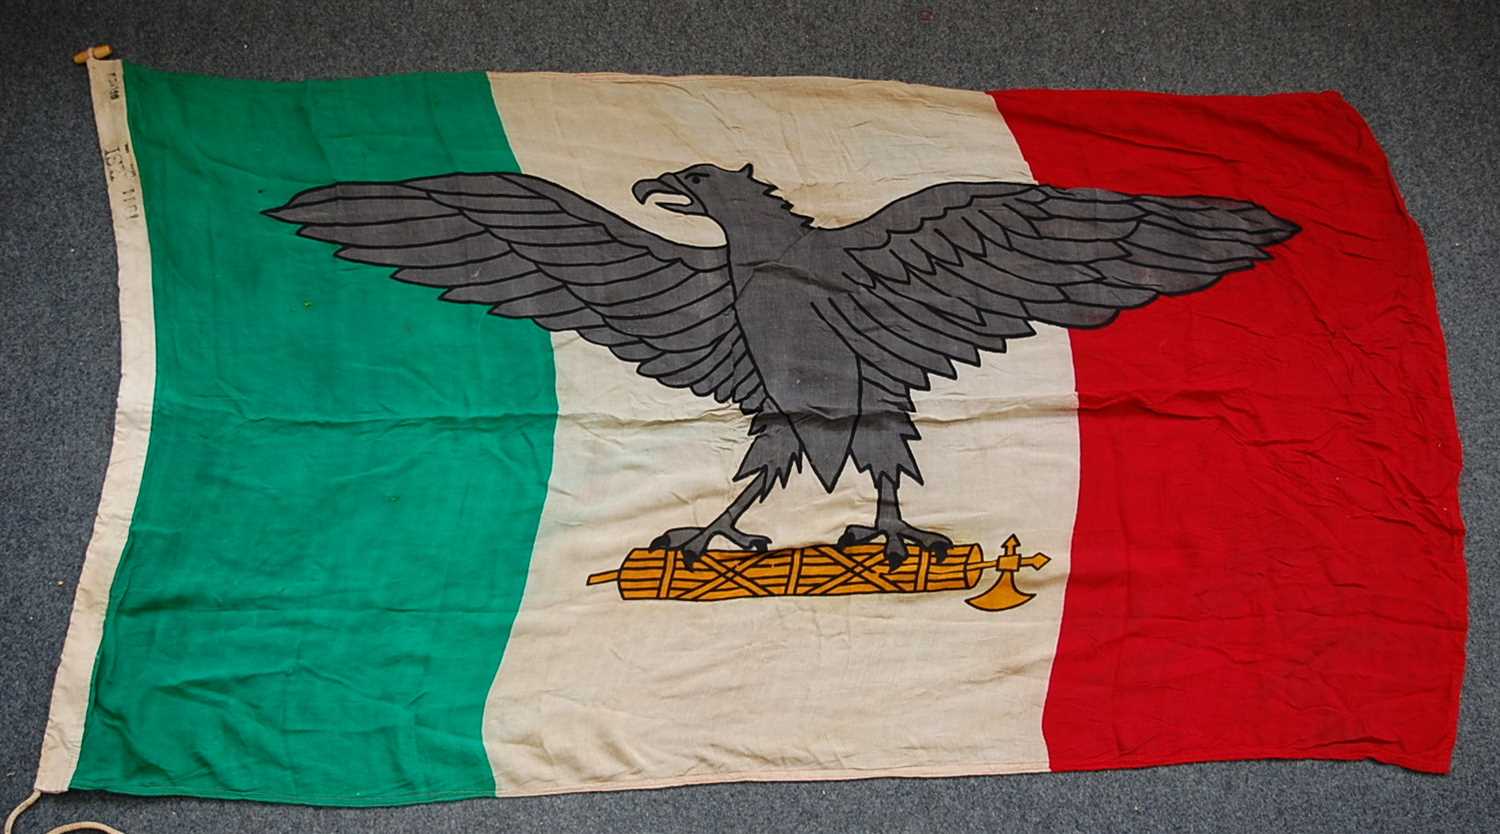 Lot 237 - An Italian Fascist RSI flag